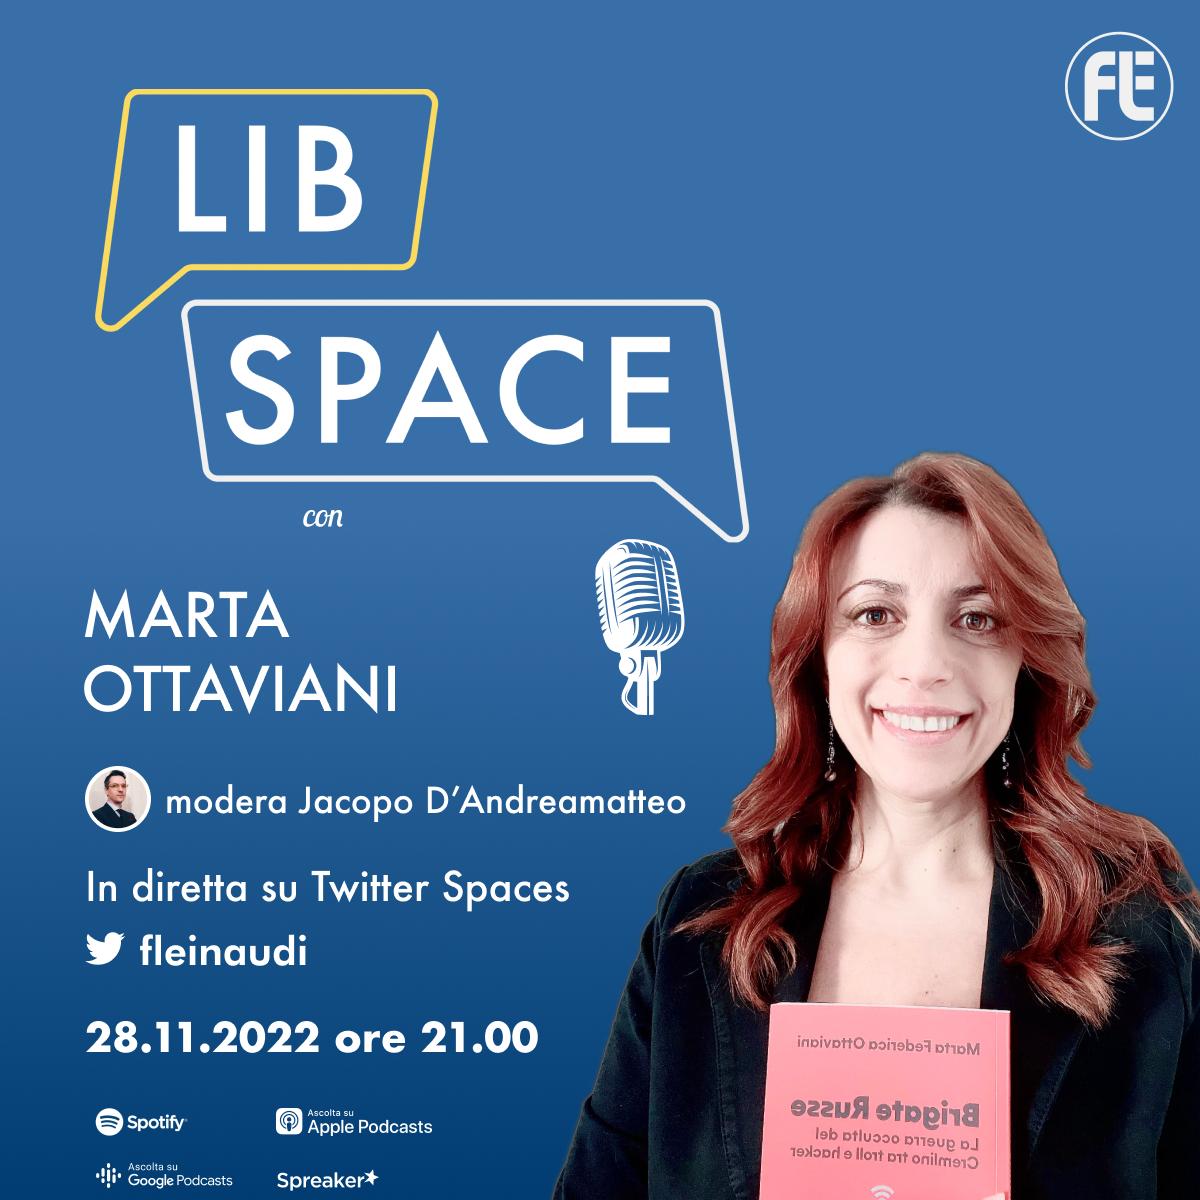 LibSpace con Marta Ottaviani